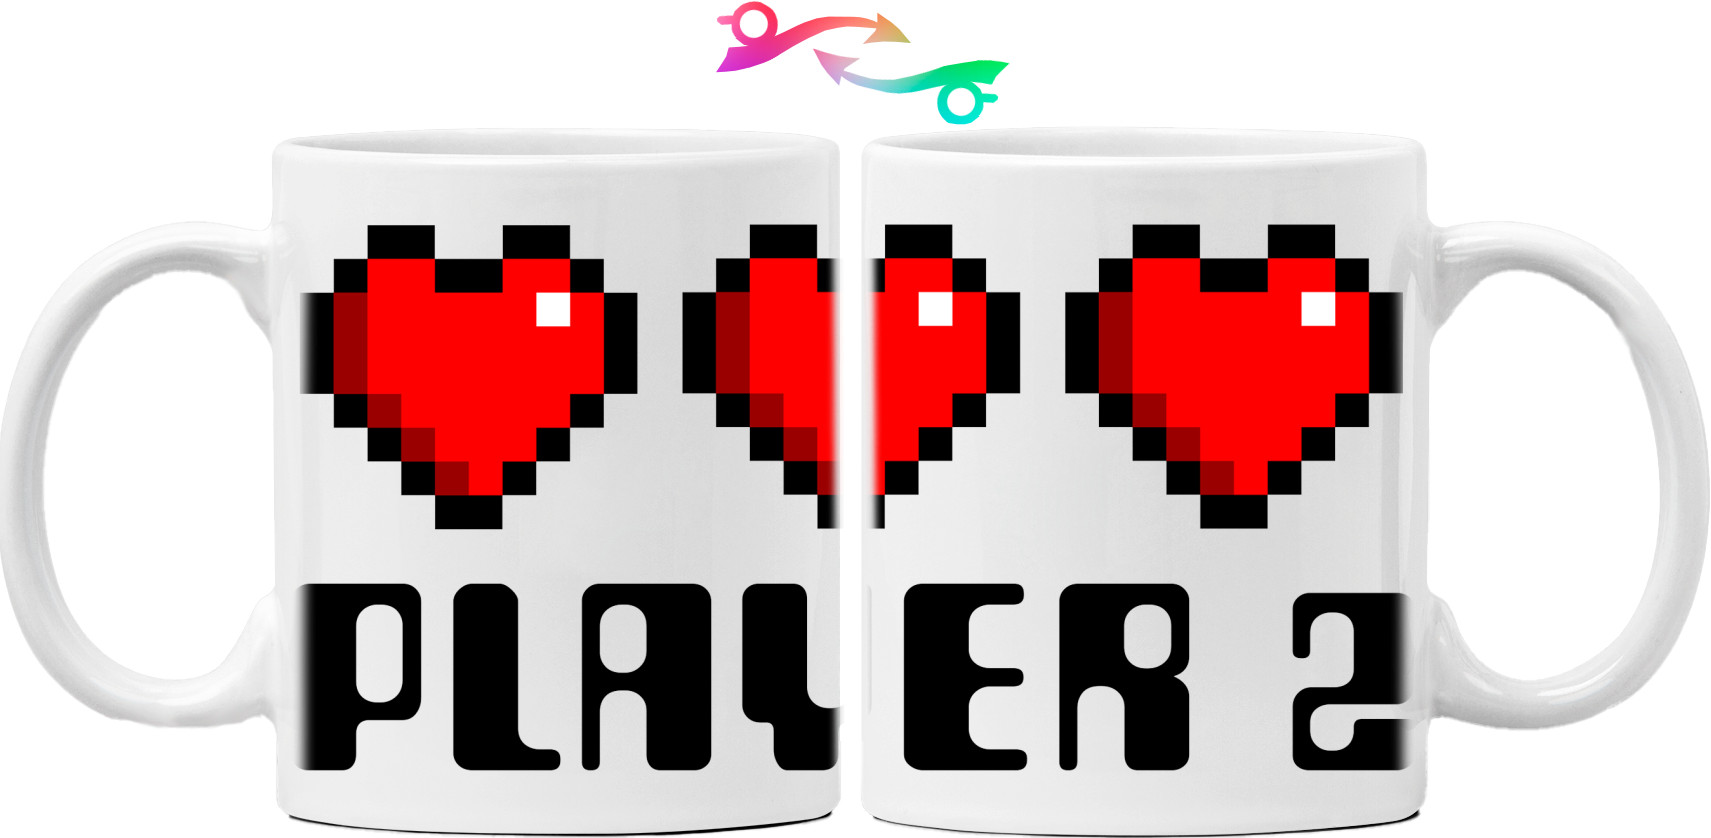 Gamer Love Player 2